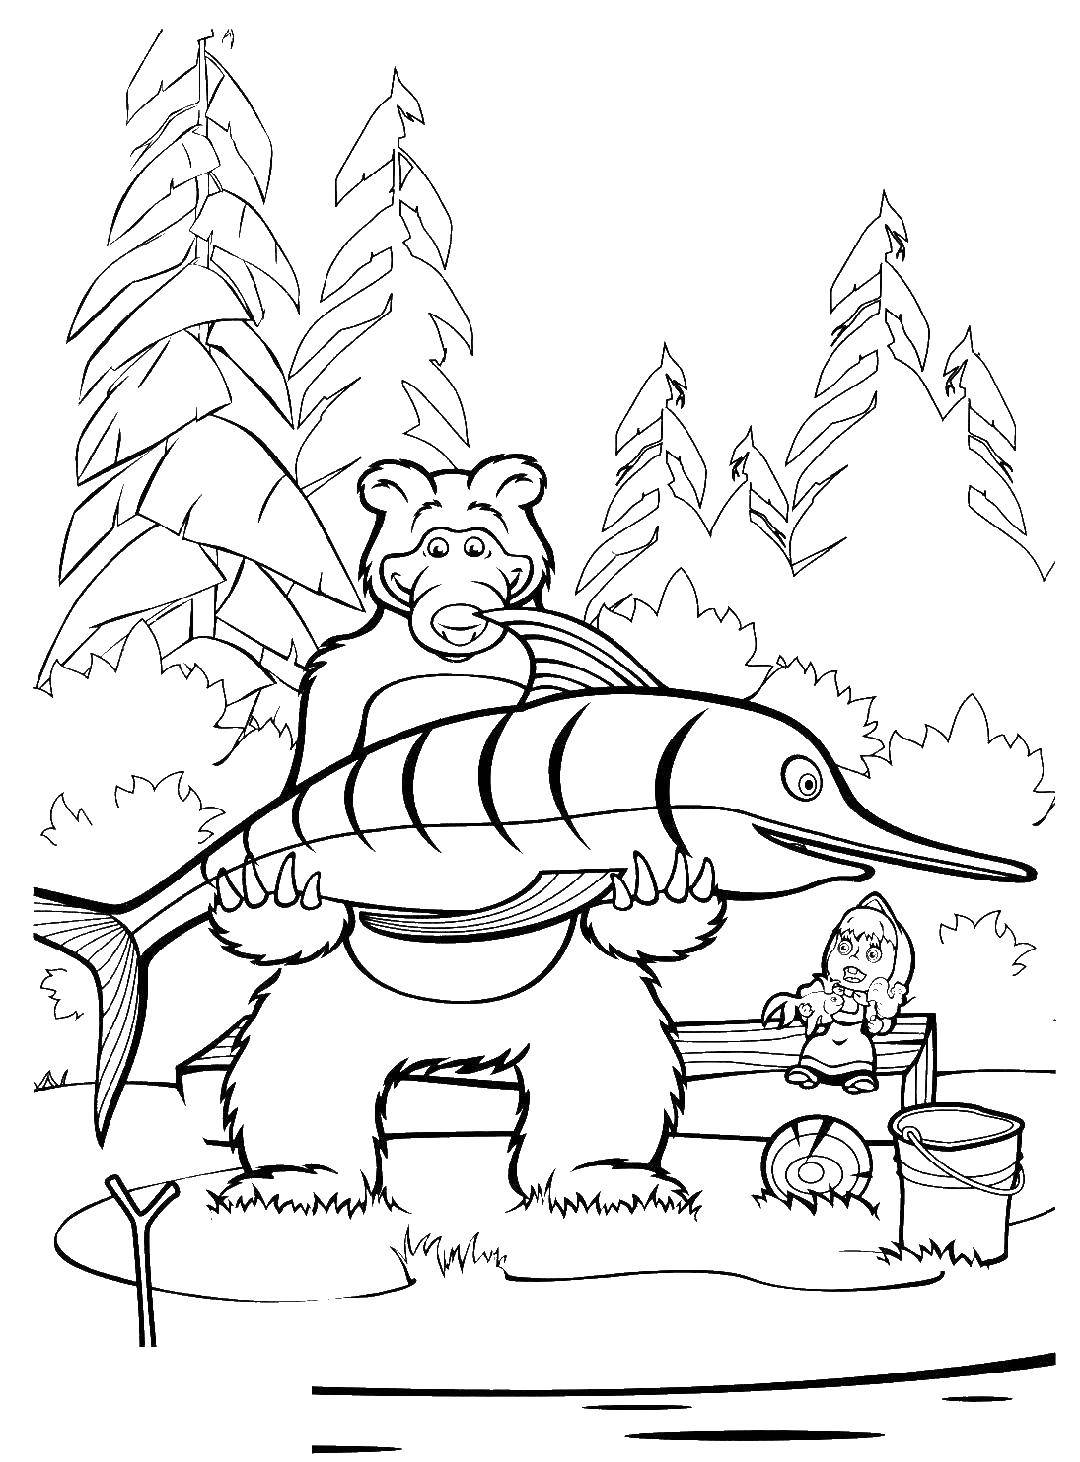 Раскраски для детей про озорную Машу из мультфильма Маша и медведь  Медведь поймал большую рыбу